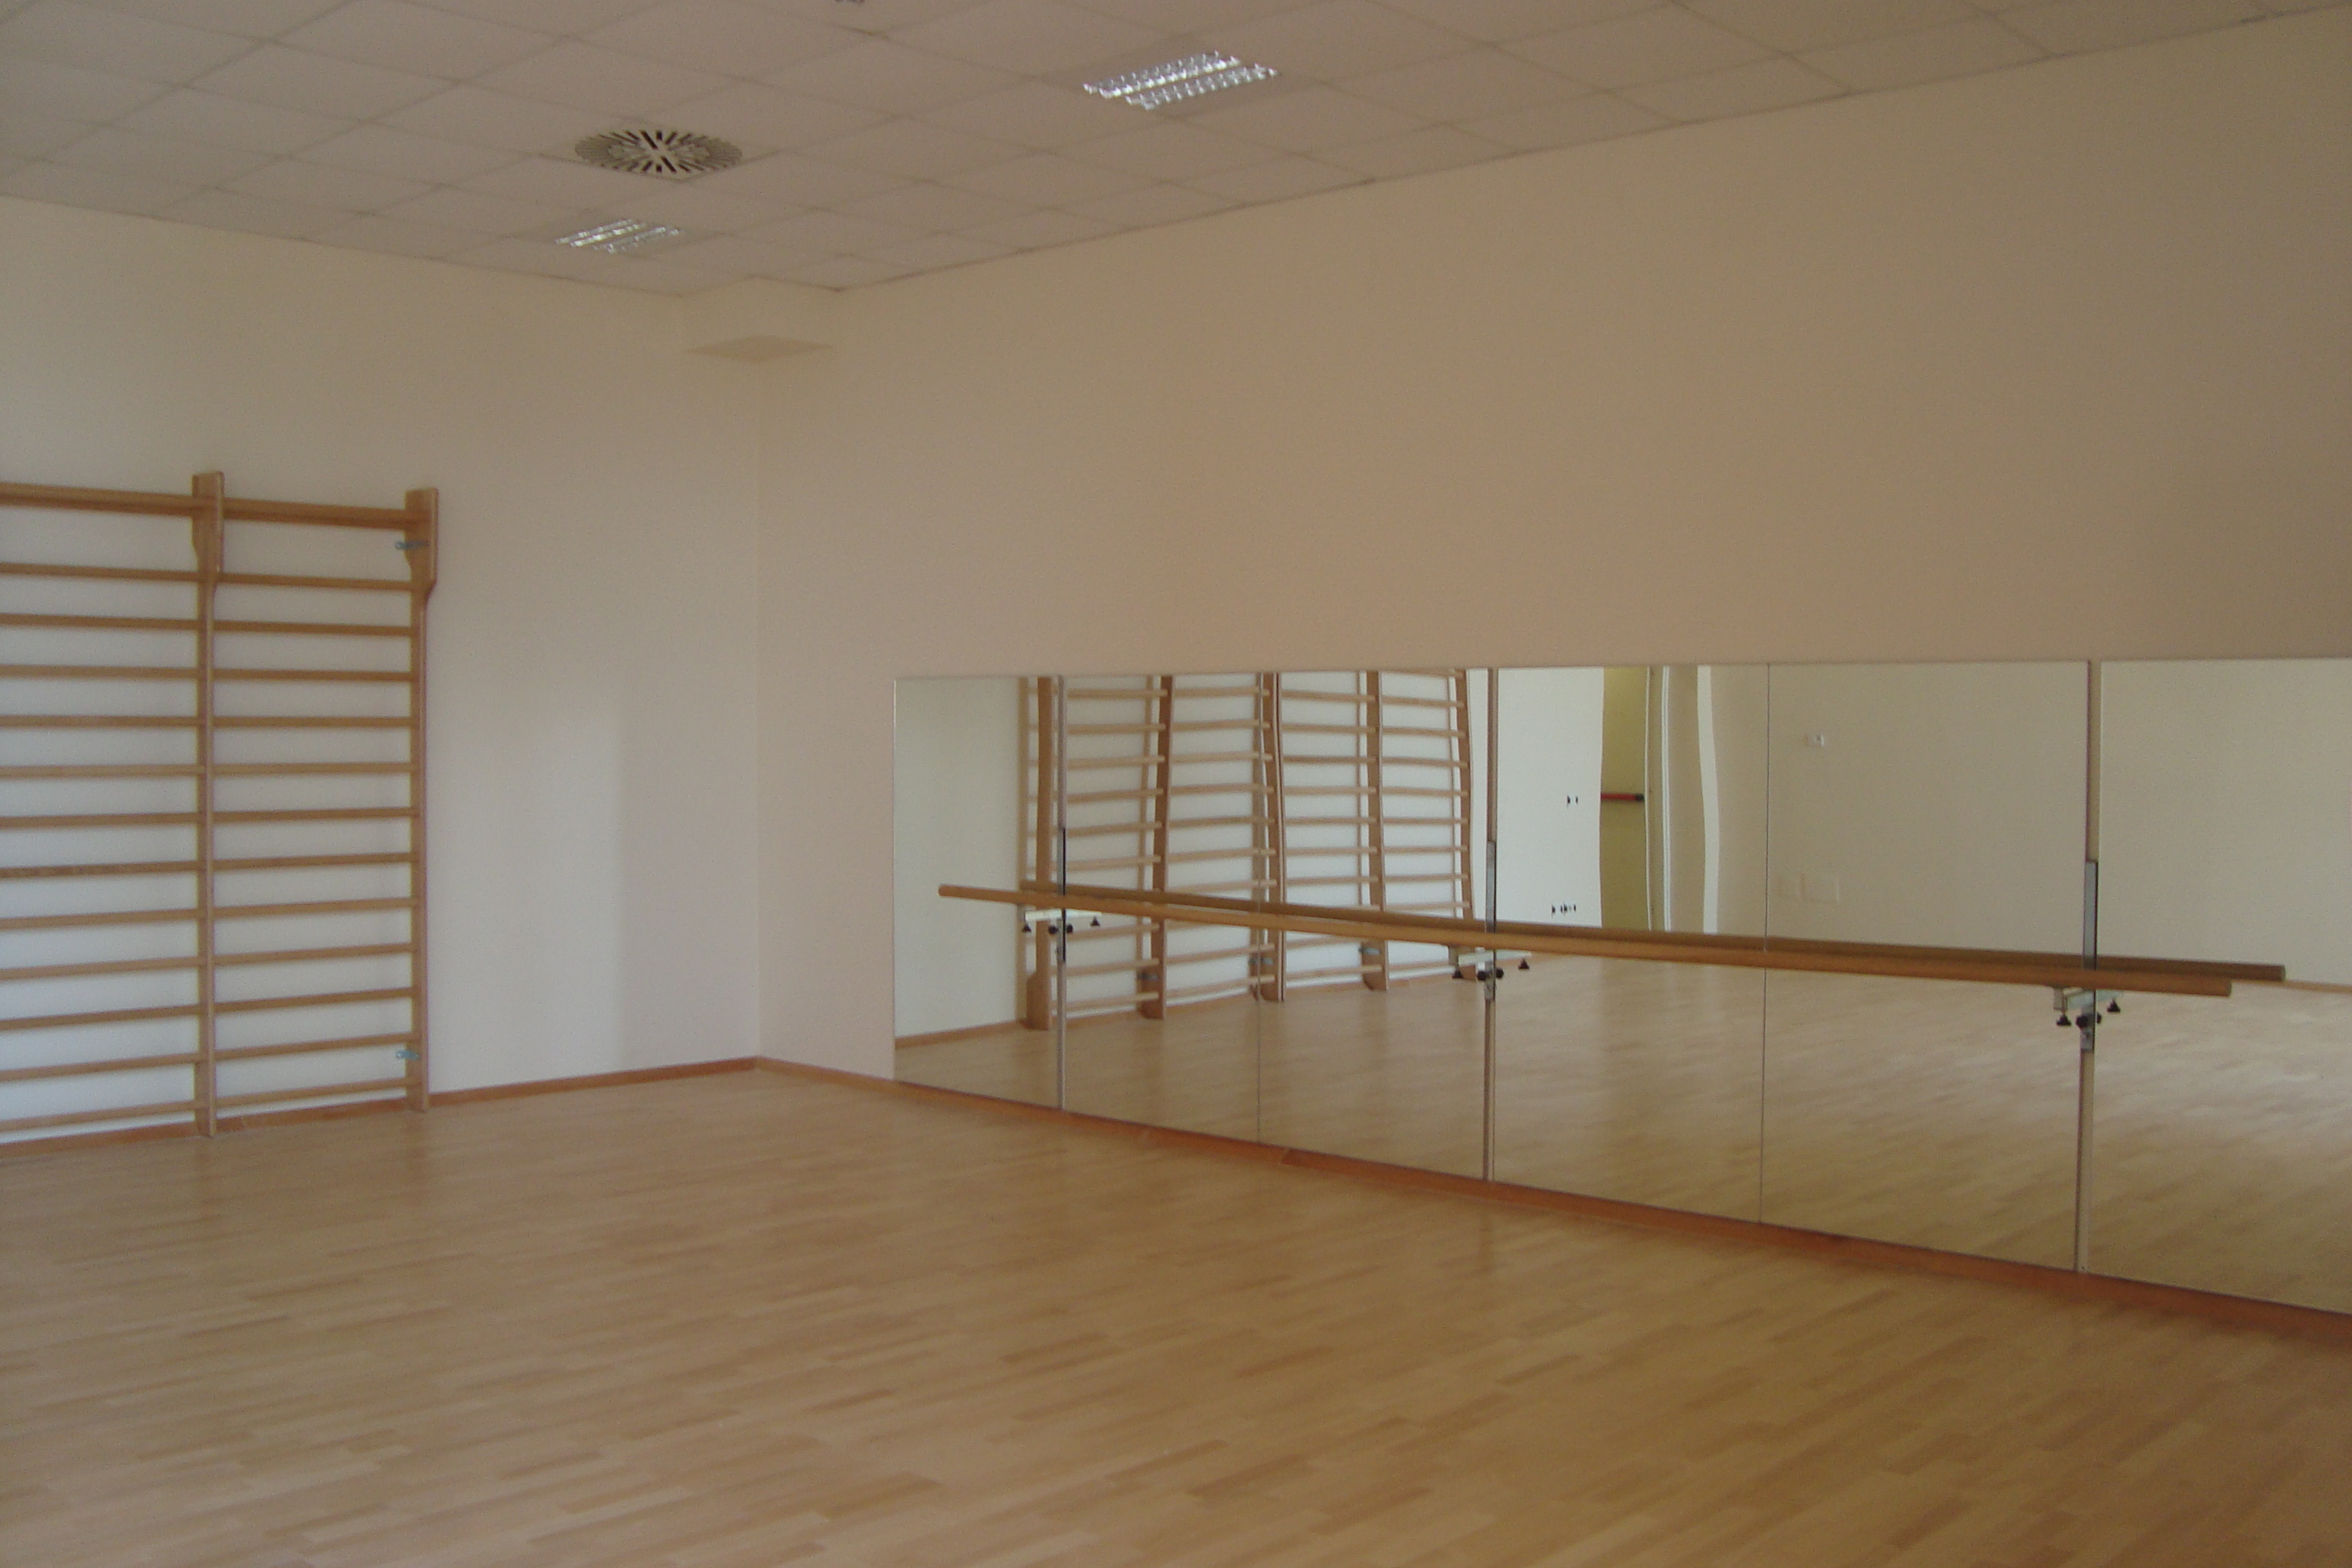 Sala secondaria per attività ginniche danza riabilitative fisioterapiche ed altre varie.